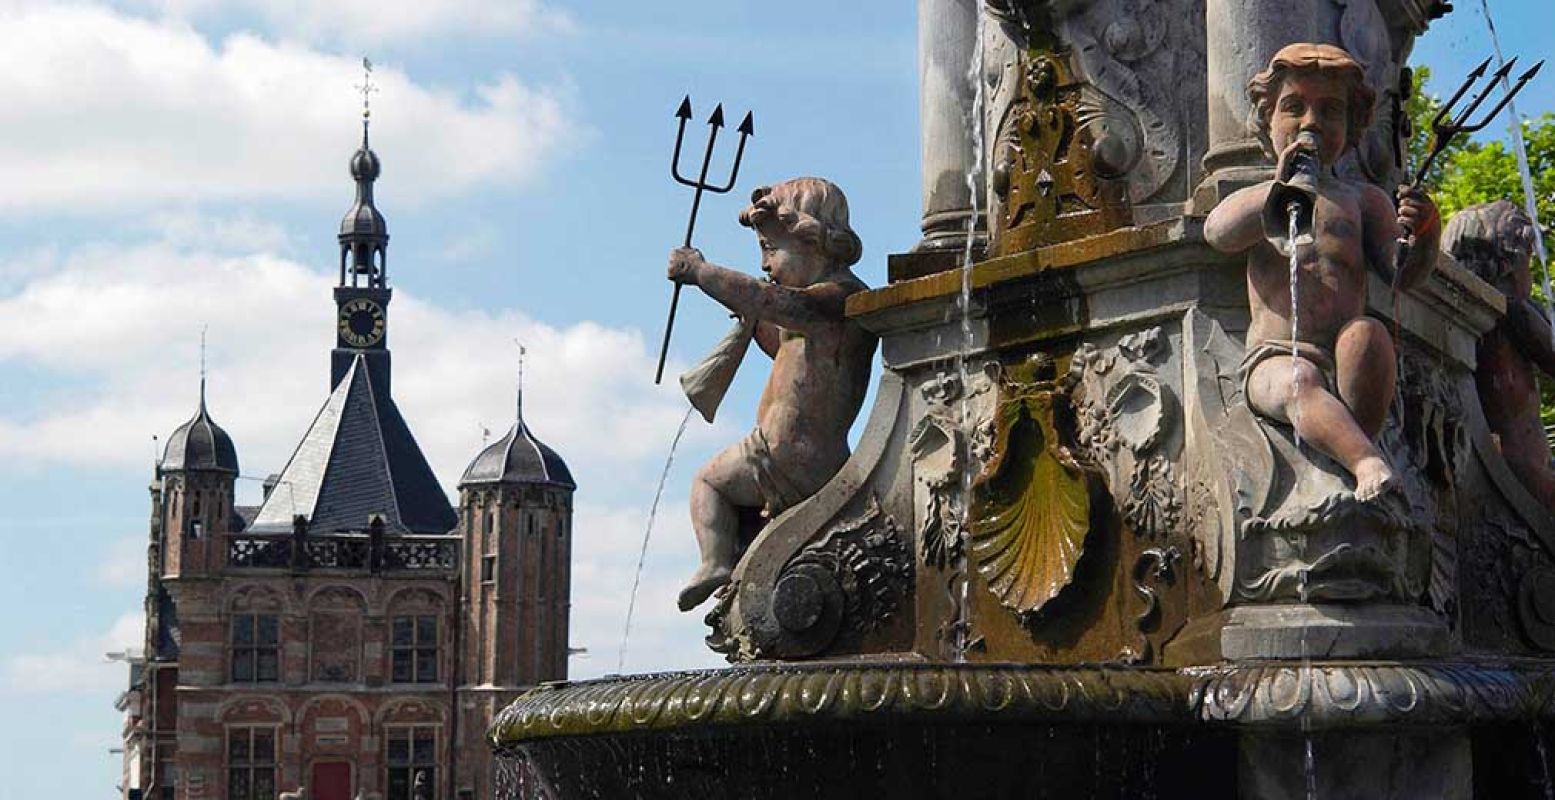 Deventer is een van de oudste steden van Nederland. De stad bestaat inmiddels 1250 jaar. Foto: VVV Deventer.